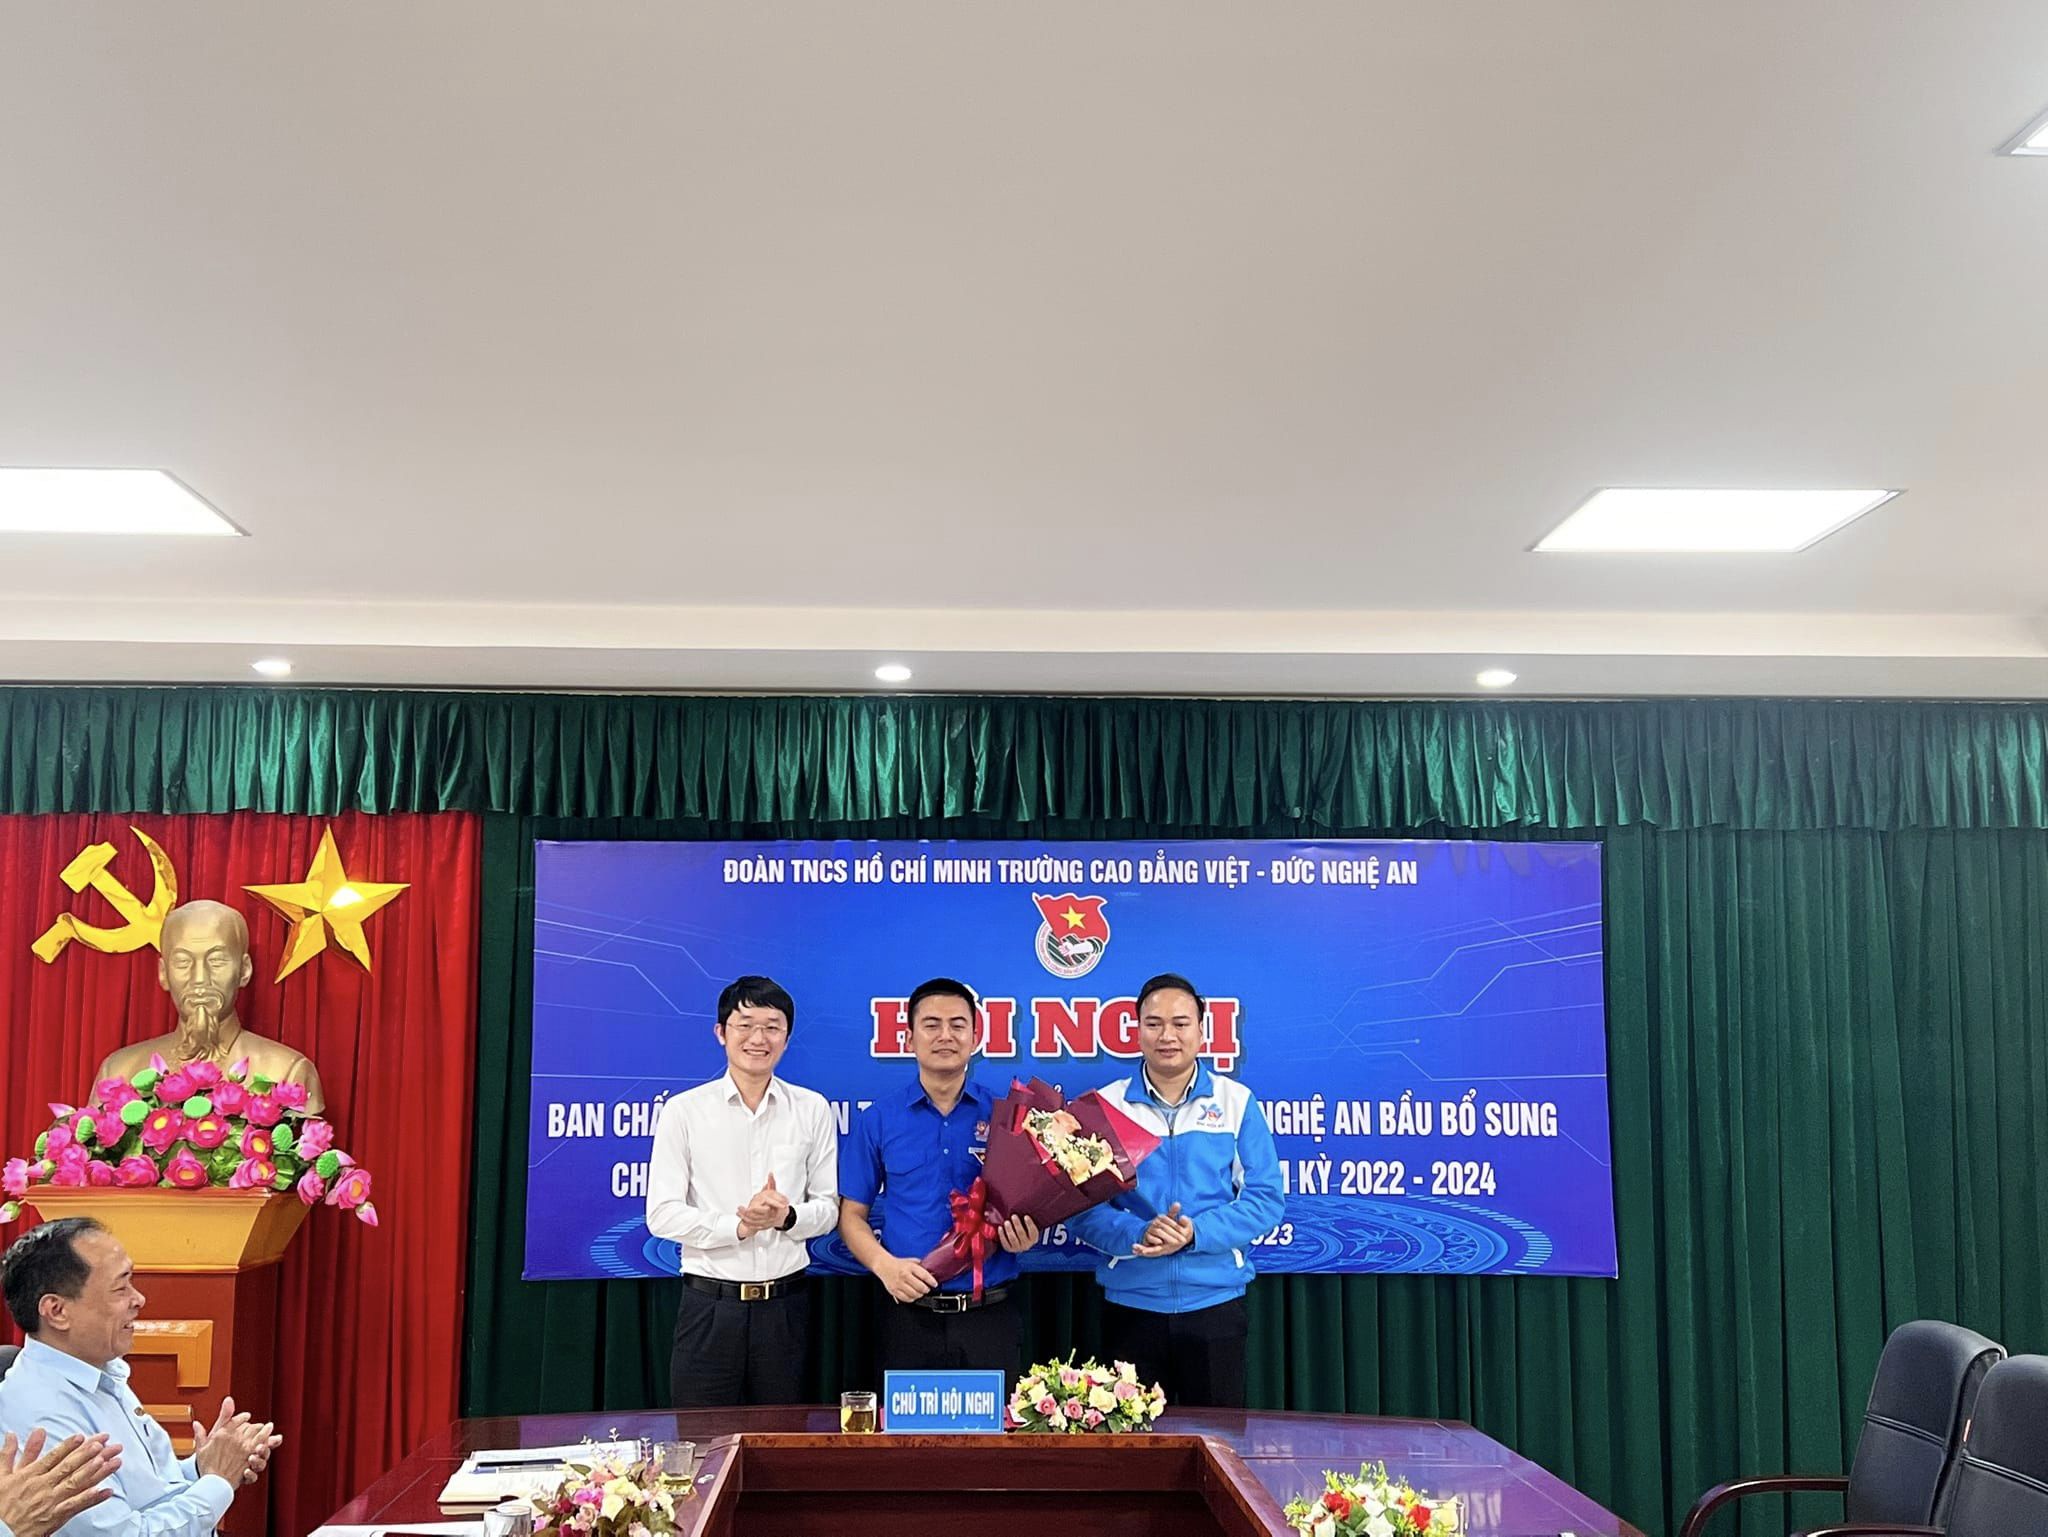  Đồng chí Lê Văn Đức được bầu làm Bí thư Đoàn trường Cao đẳng Việt - Đức Nghệ An